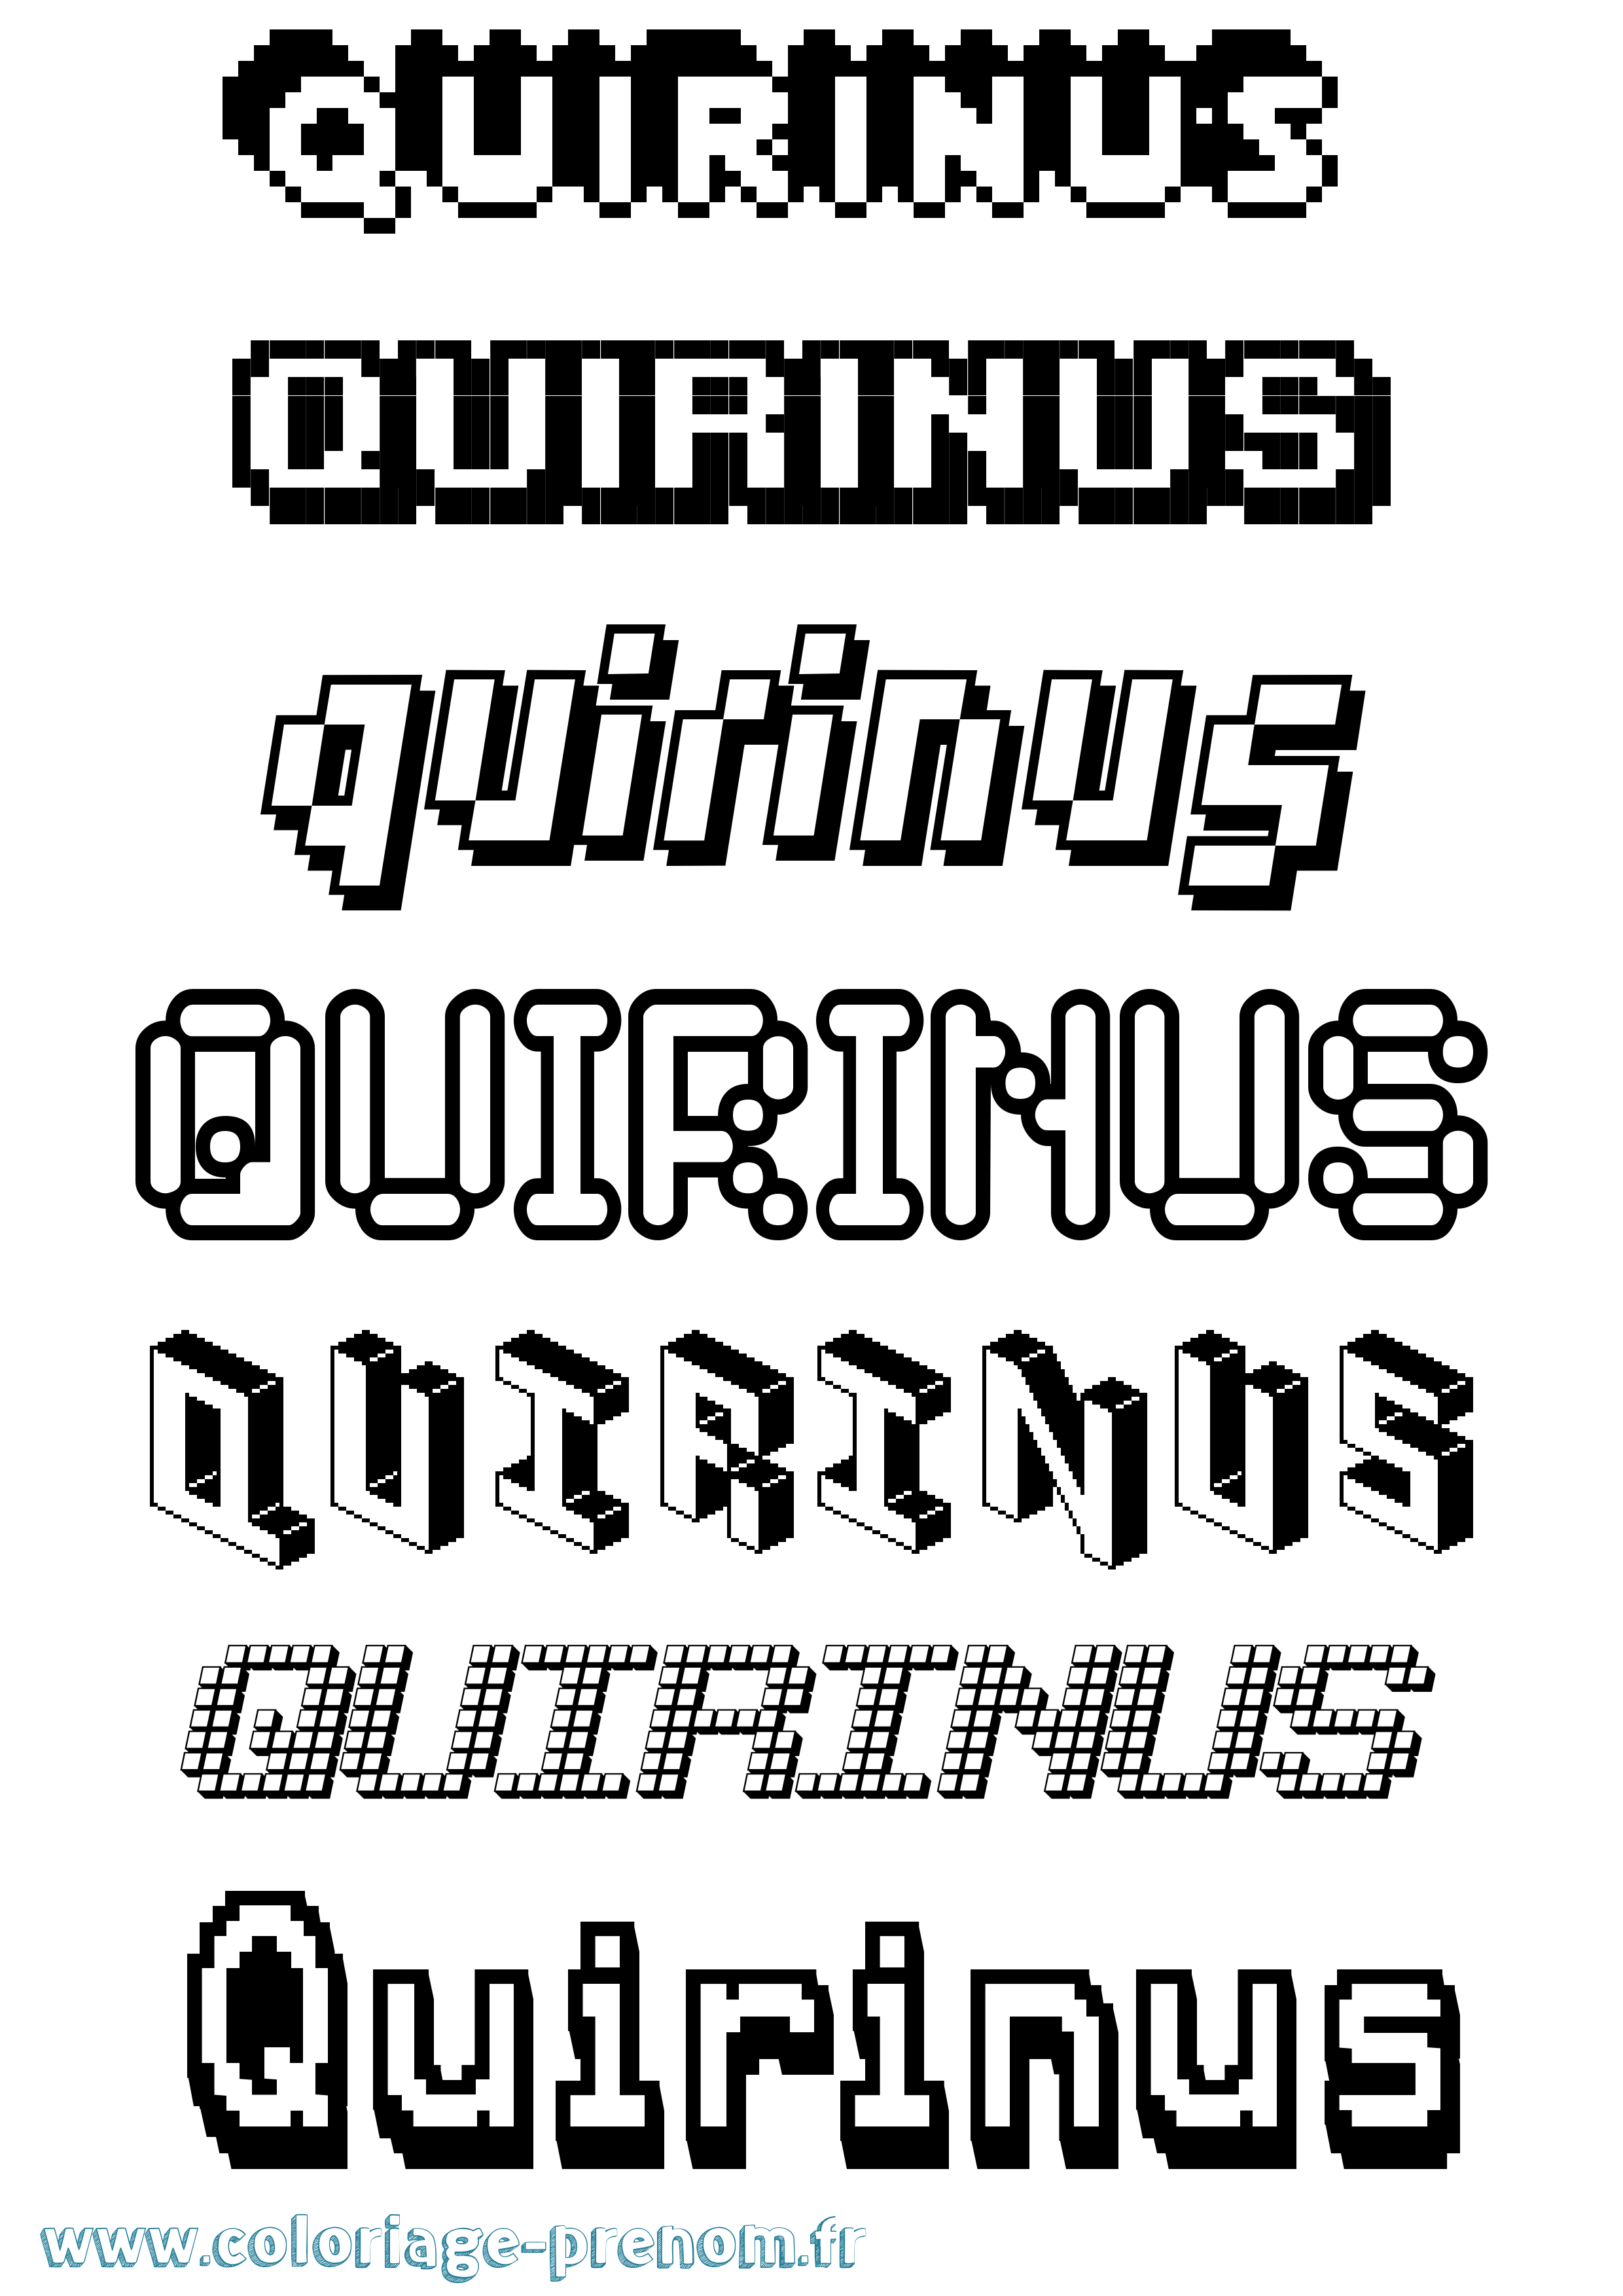 Coloriage prénom Quirinus Pixel